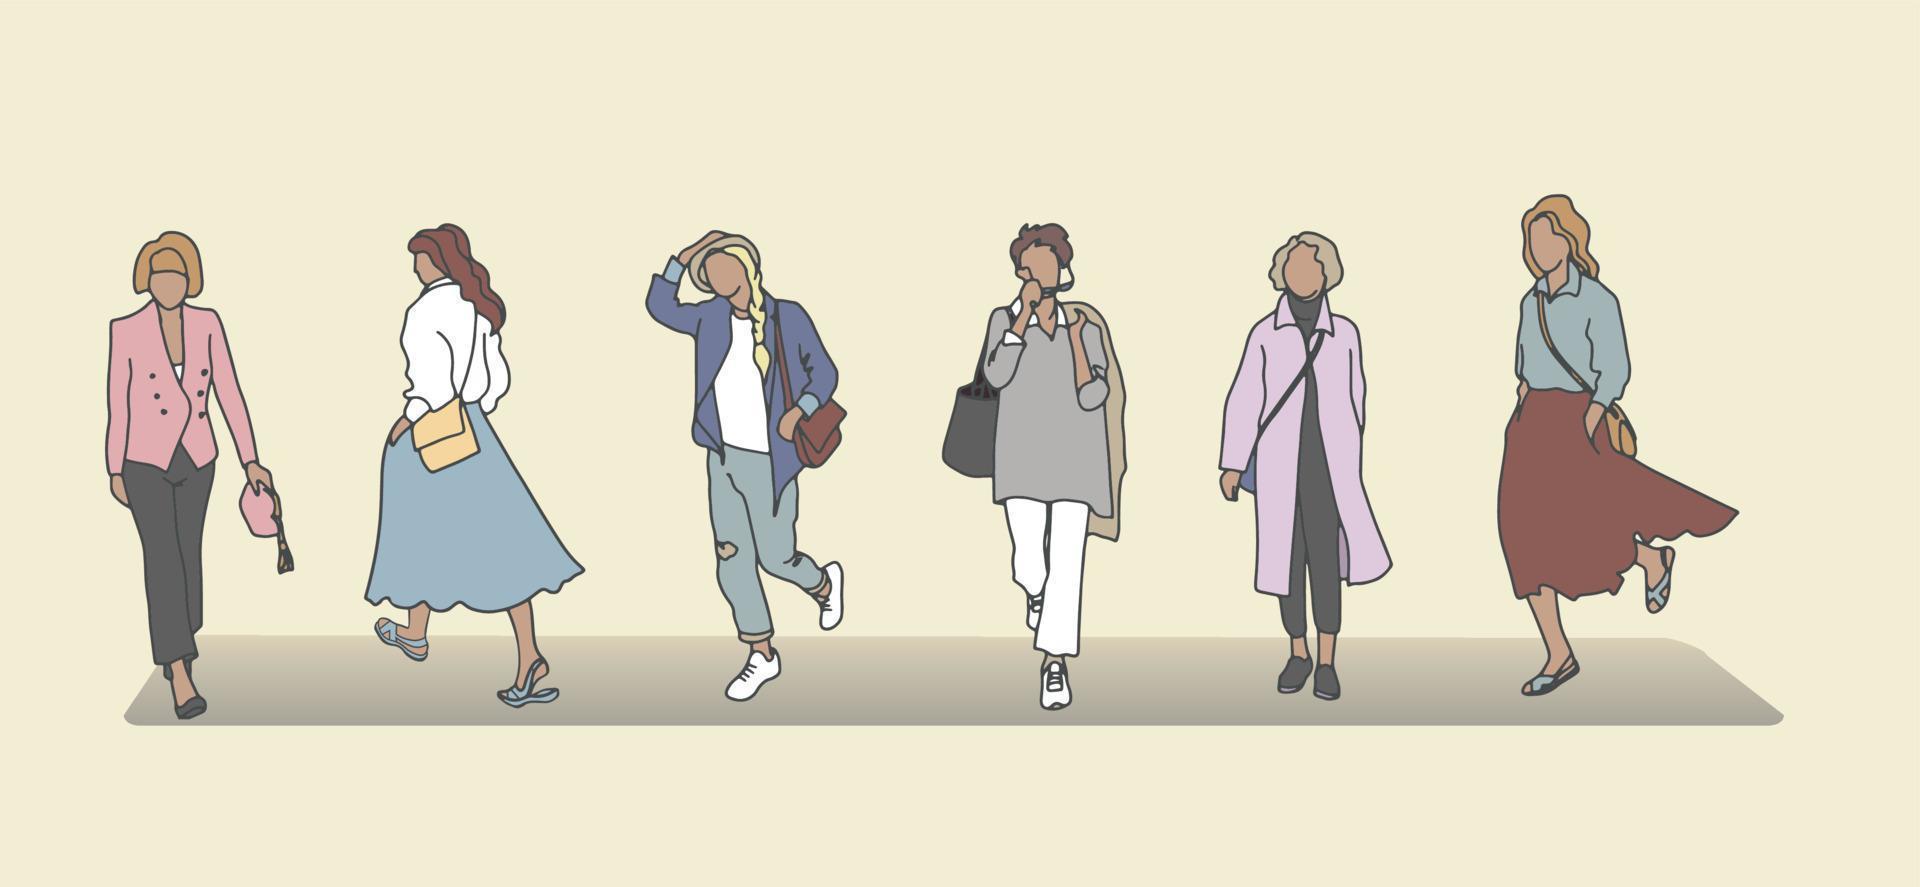 ilustração vetorial de pessoas felizes casuais. personagens de desenhos animados diferentes, pessoas vestindo várias roupas elegantes em estilo casual vetor